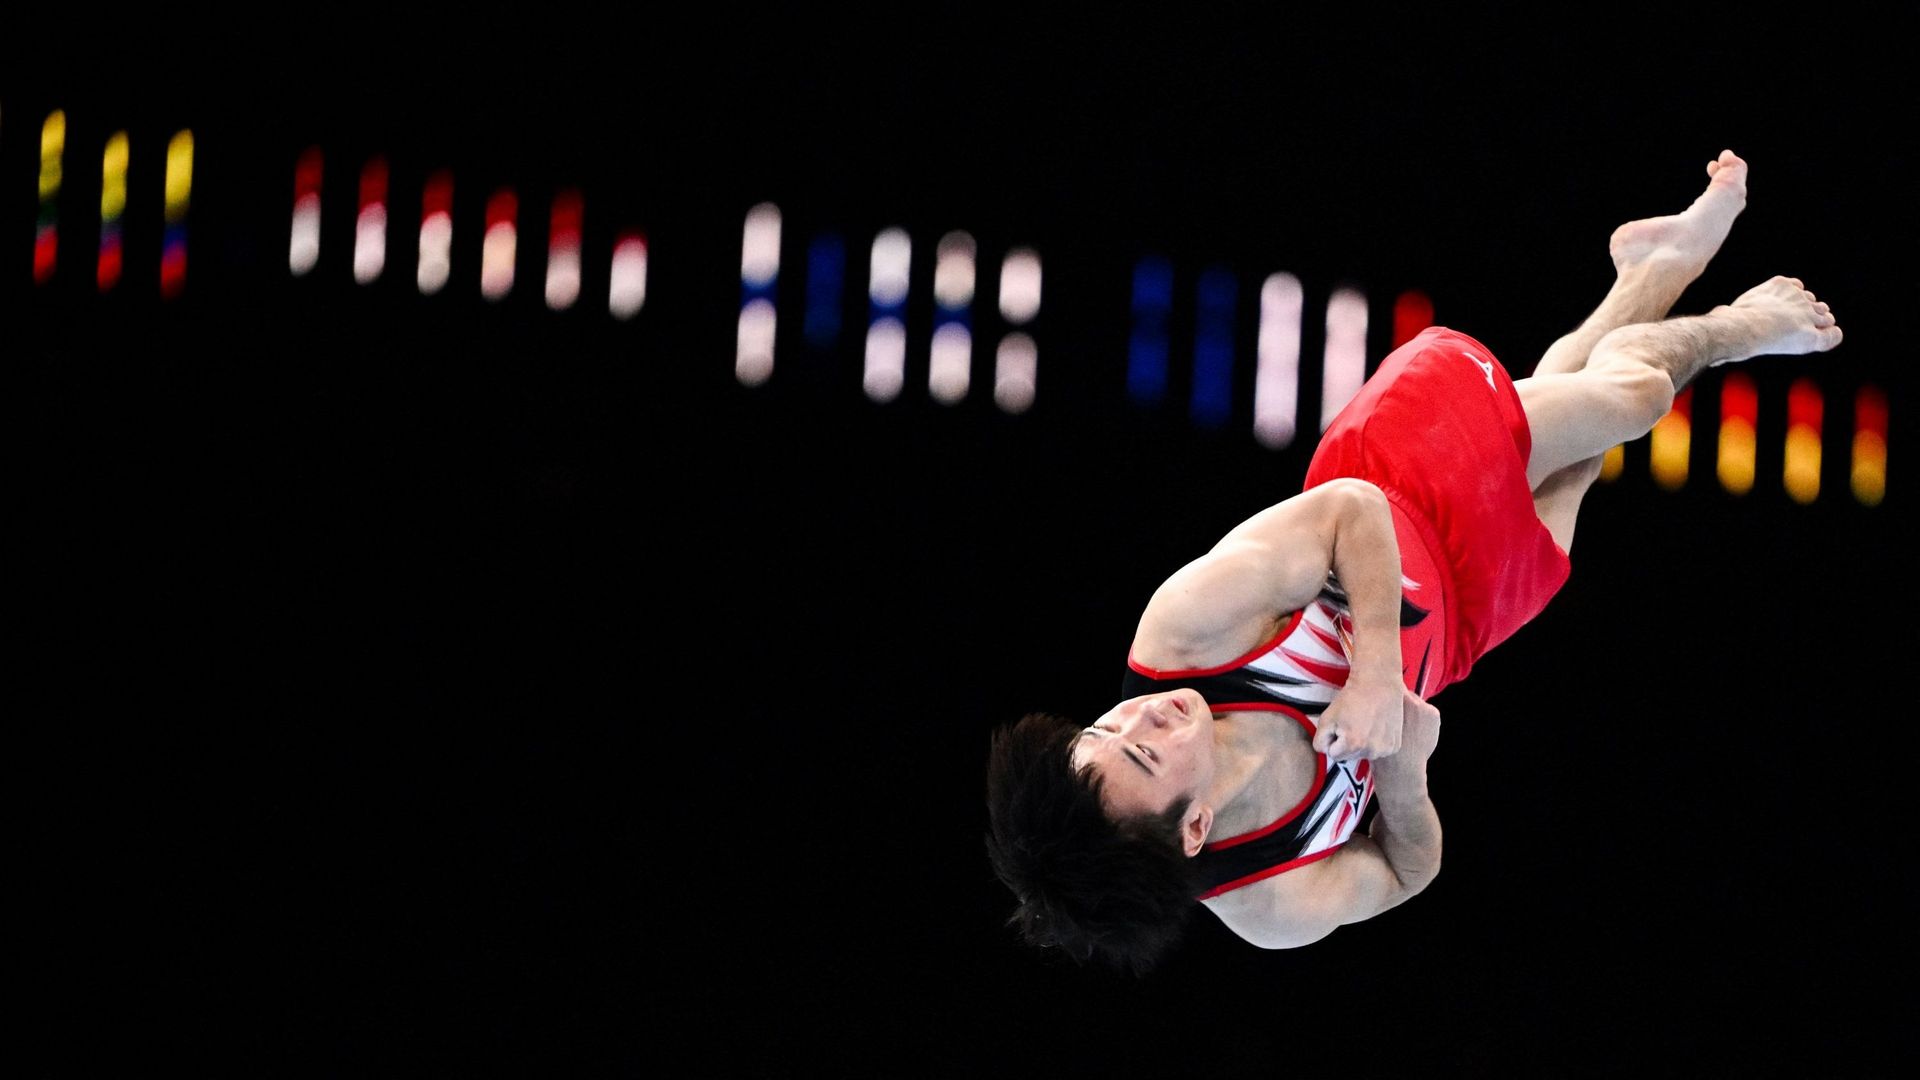 Coupe du monde de gymnastique: déjà une victoire pour Nina Derwael, Lisa  Vaelen sur le podium des barres asymétriques - La Libre